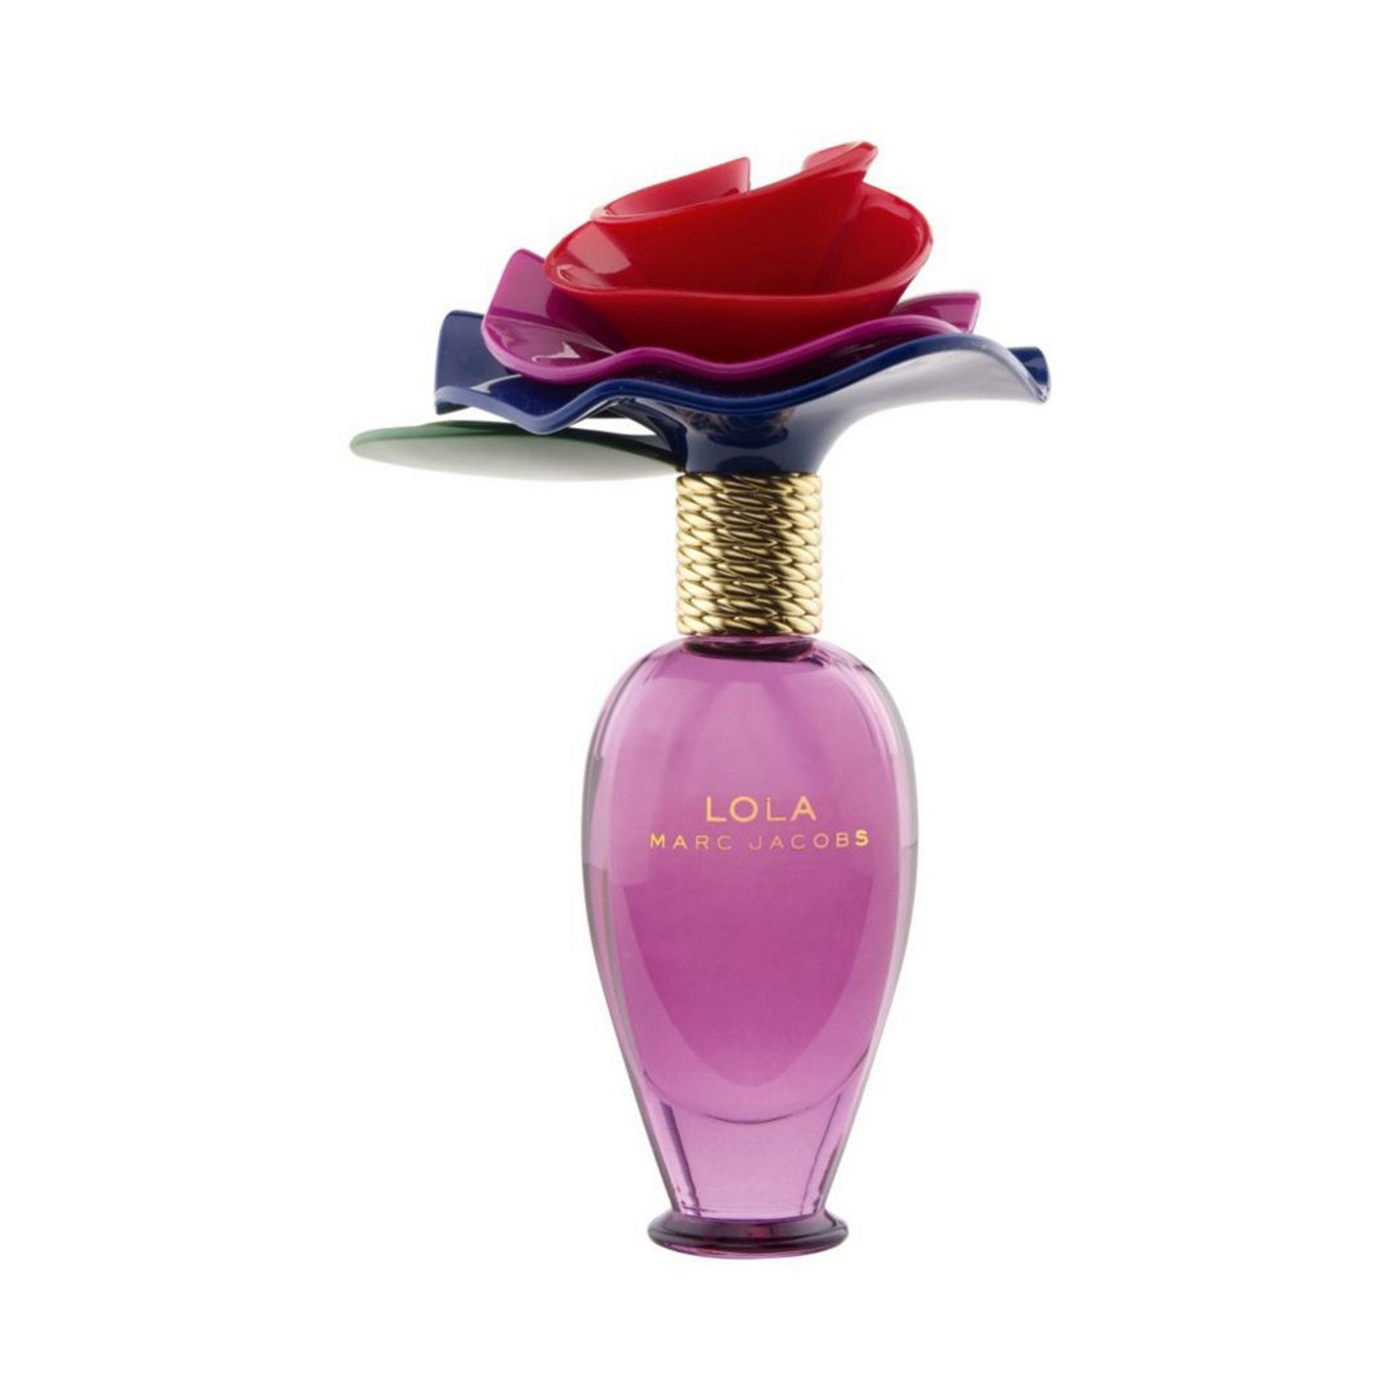 Marc Jacobs Lola eau de parfum 50ml